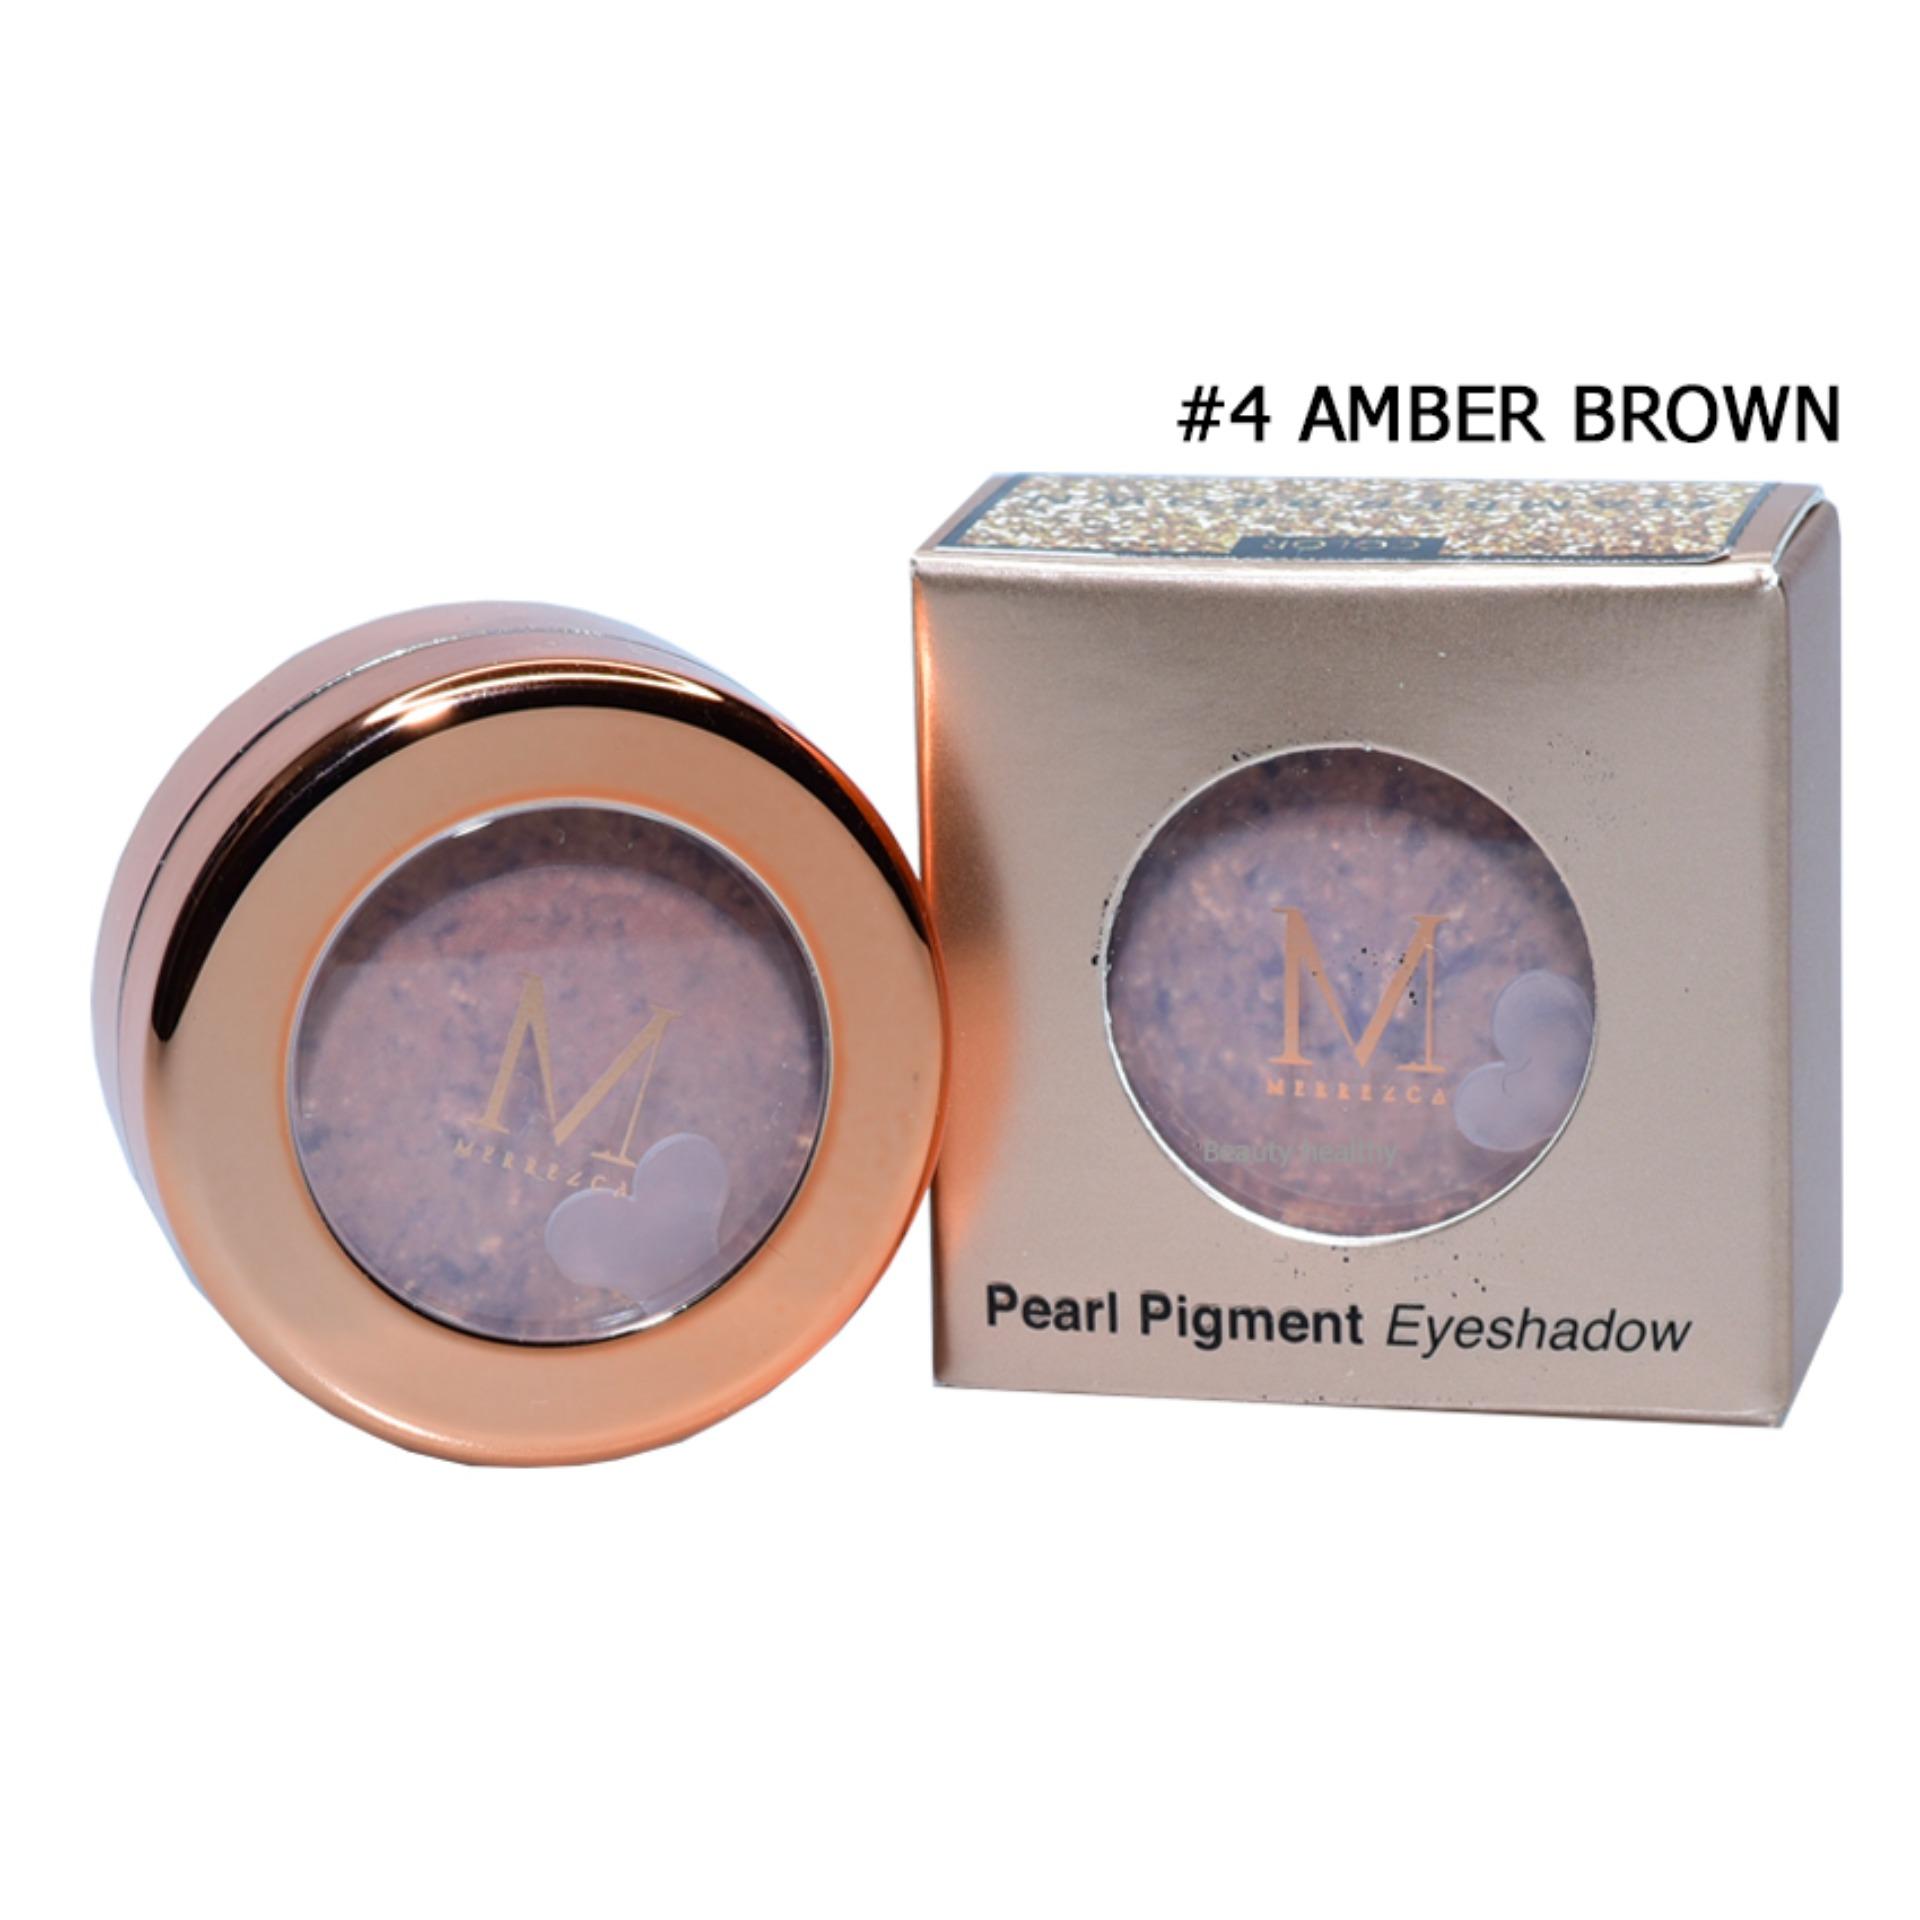 Merrez'ca Pearl pigment Eyeshadow เมอร์เรซกา เพิร์ล พิกเมนท์ อายแชโดว์ #4 AMBER BROWN (1.8 กรัม x 1 กล่อง)